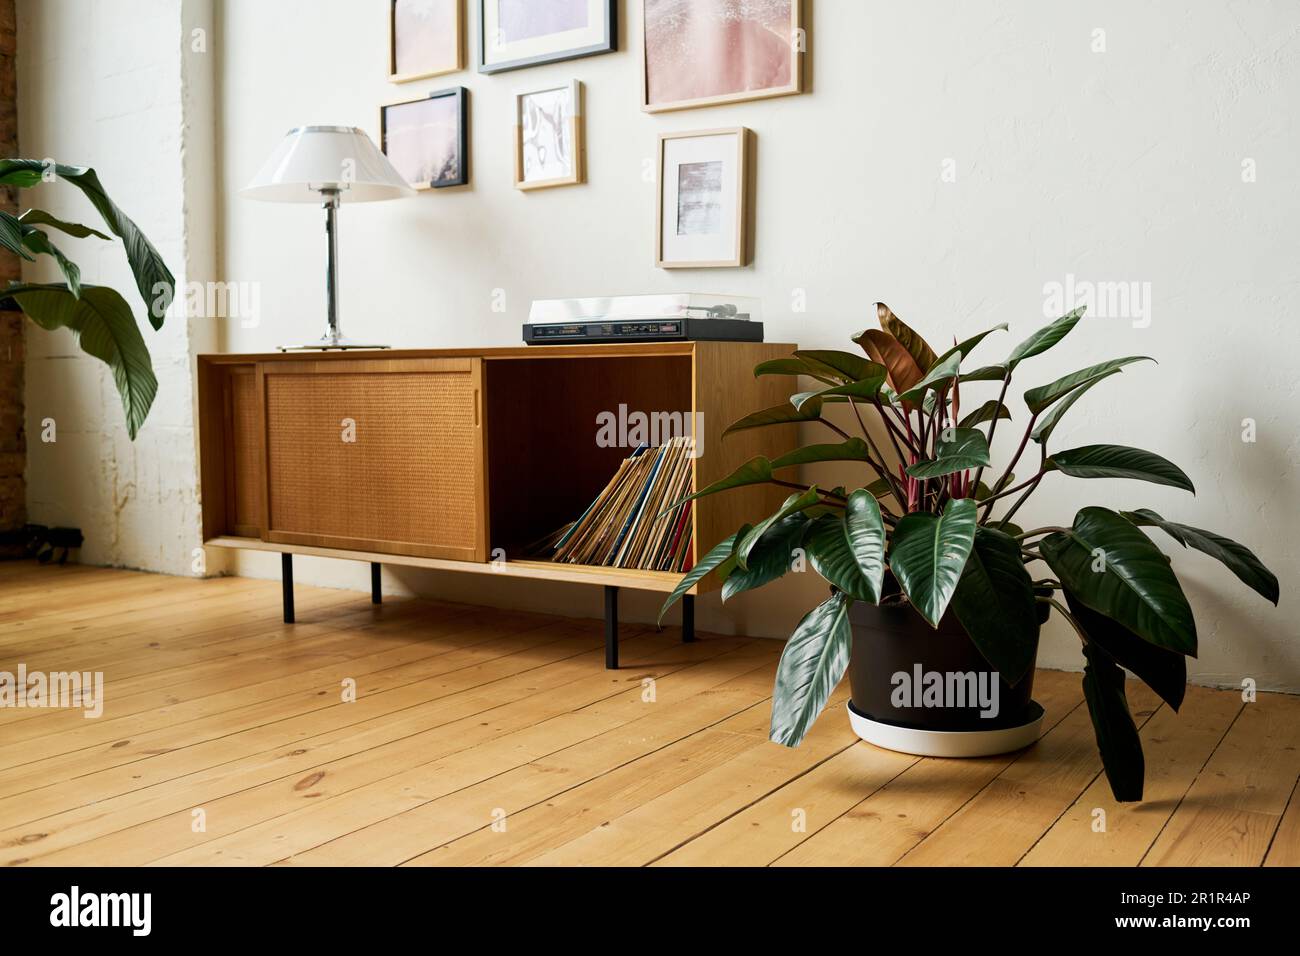 Partie d'une chambre ou d'un bureau spacieux avec des plantes vertes dans des pots de fleurs debout sur le plancher et lampe sur la table de console avec disques en vinyle dans le tiroir Banque D'Images